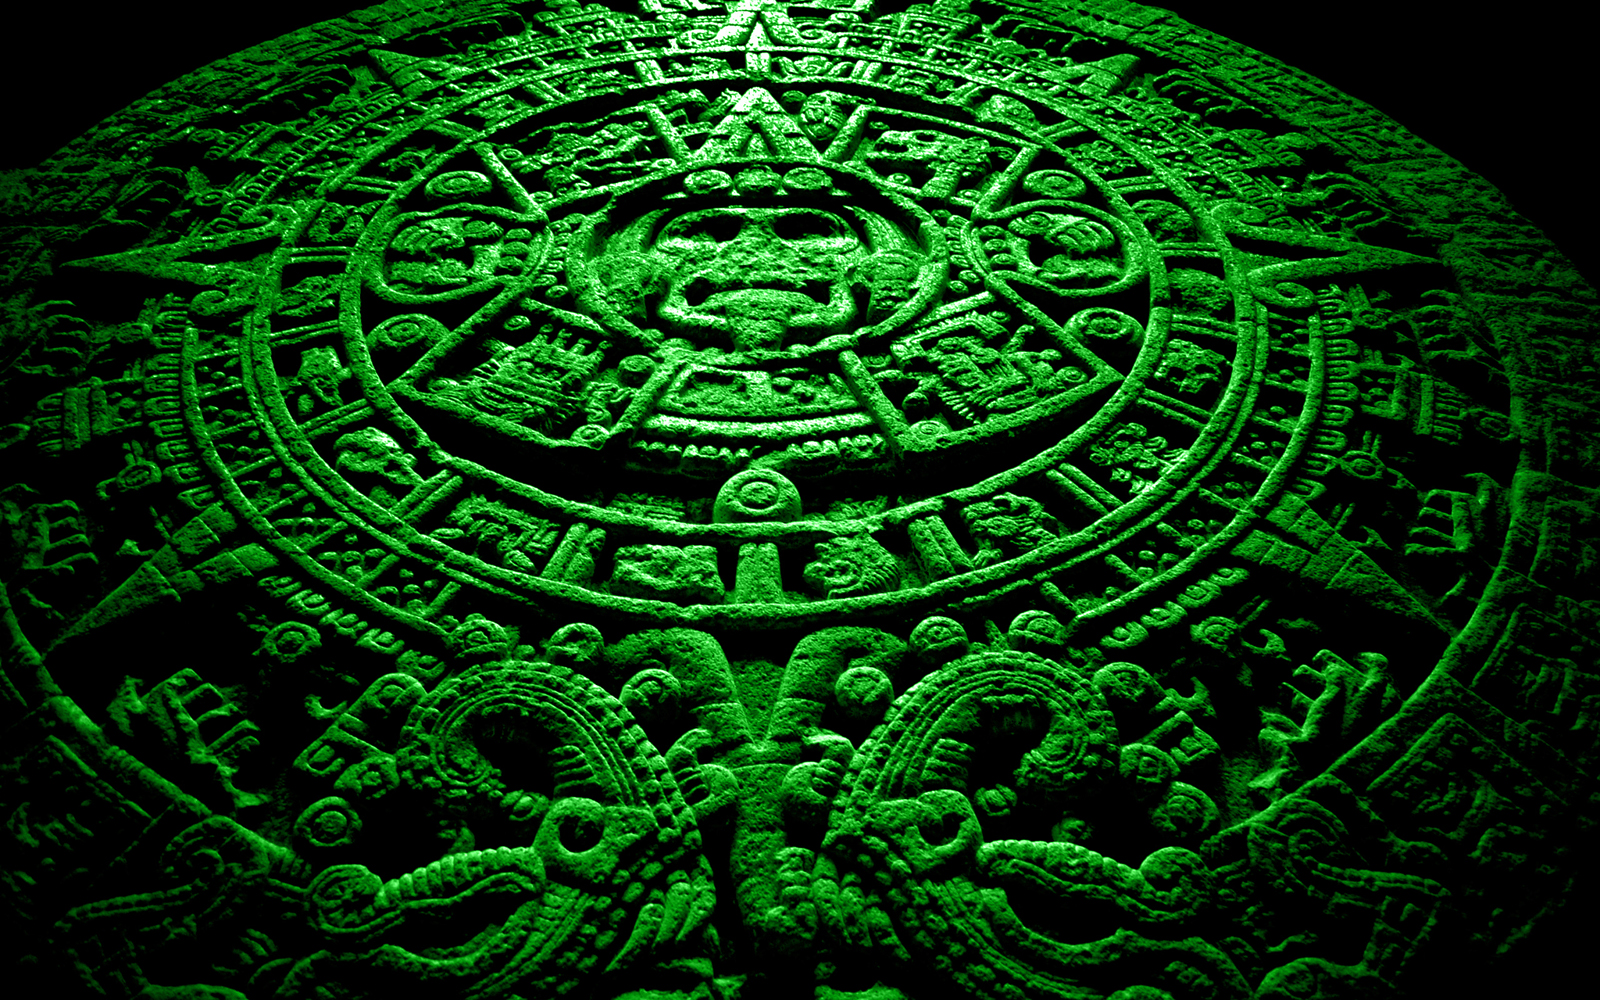 La profezia dei Maya stata reinterpretata di recente e non parla di